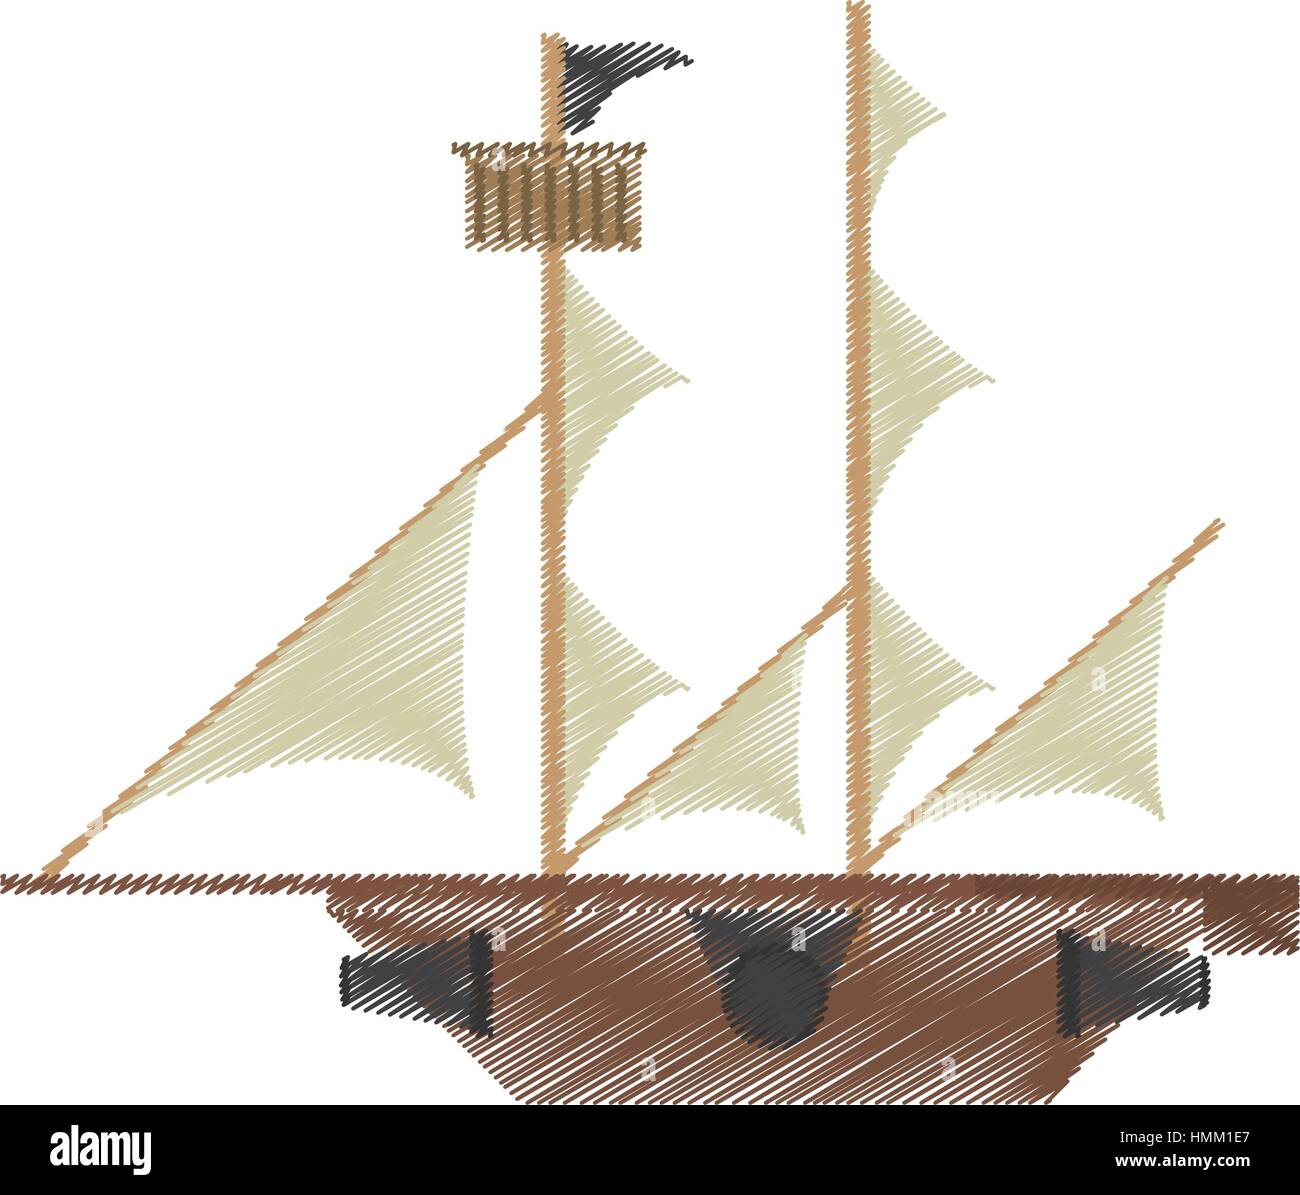 Aventure voile Bateau pirate dessin illustration vecteur eps 10 Image  Vectorielle Stock - Alamy